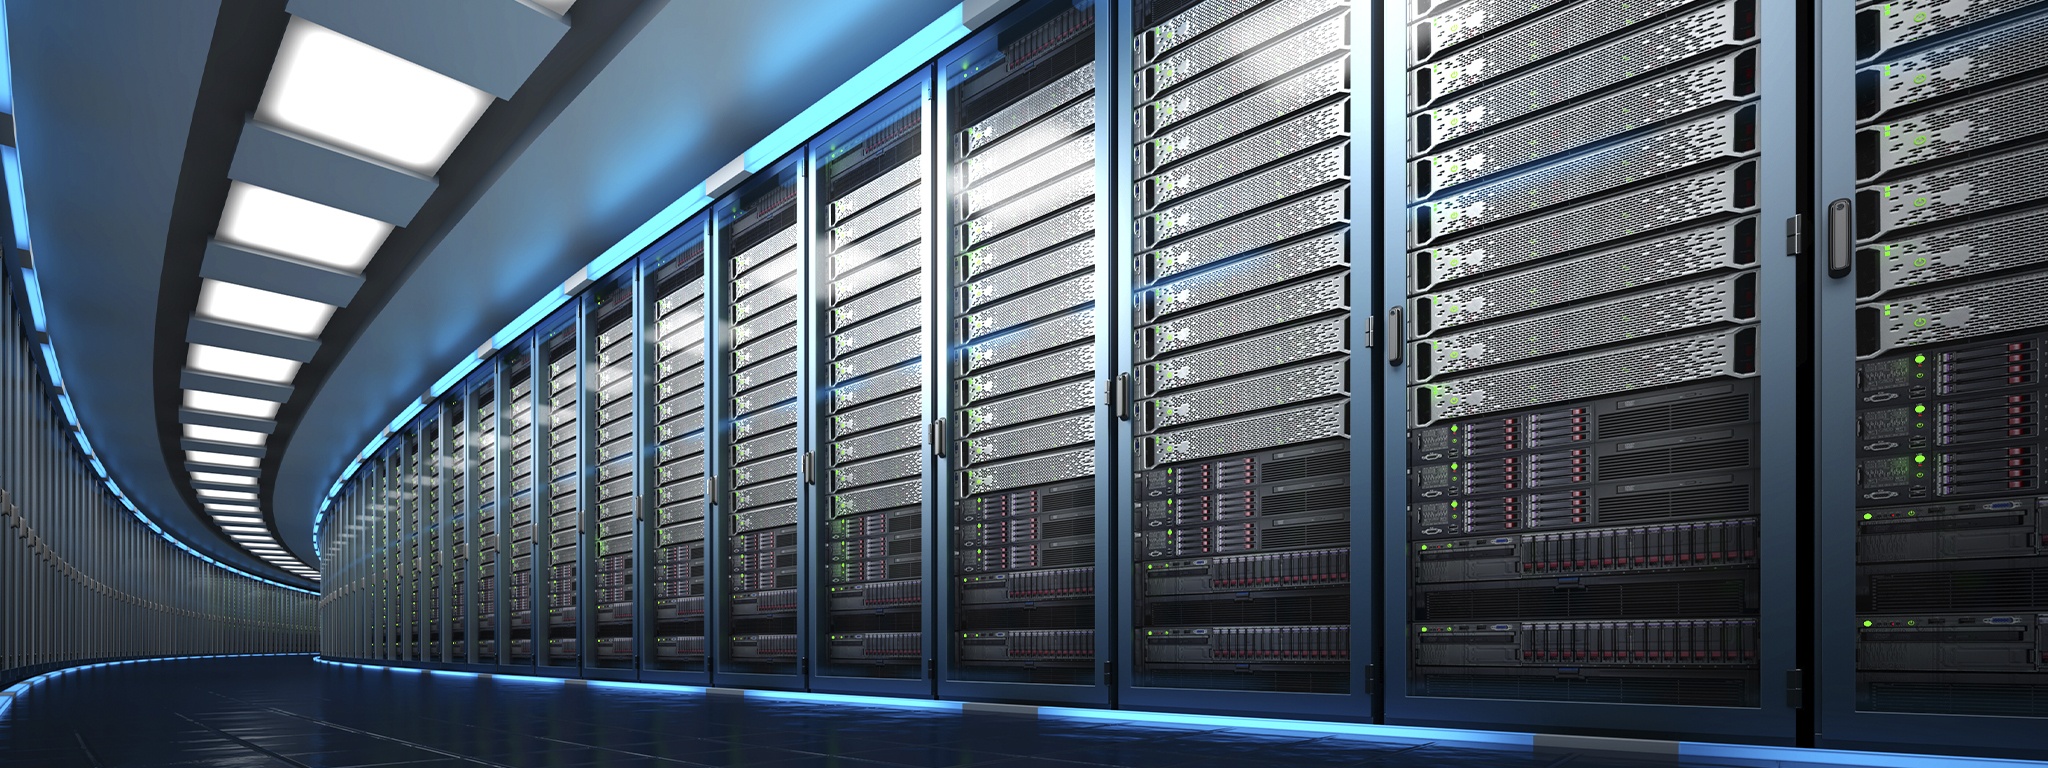 3D-Rendering eines Rechenzentrums, das einen großen Serverraum mit einer langen Reihe von Server-Rack-Einheiten zeigt